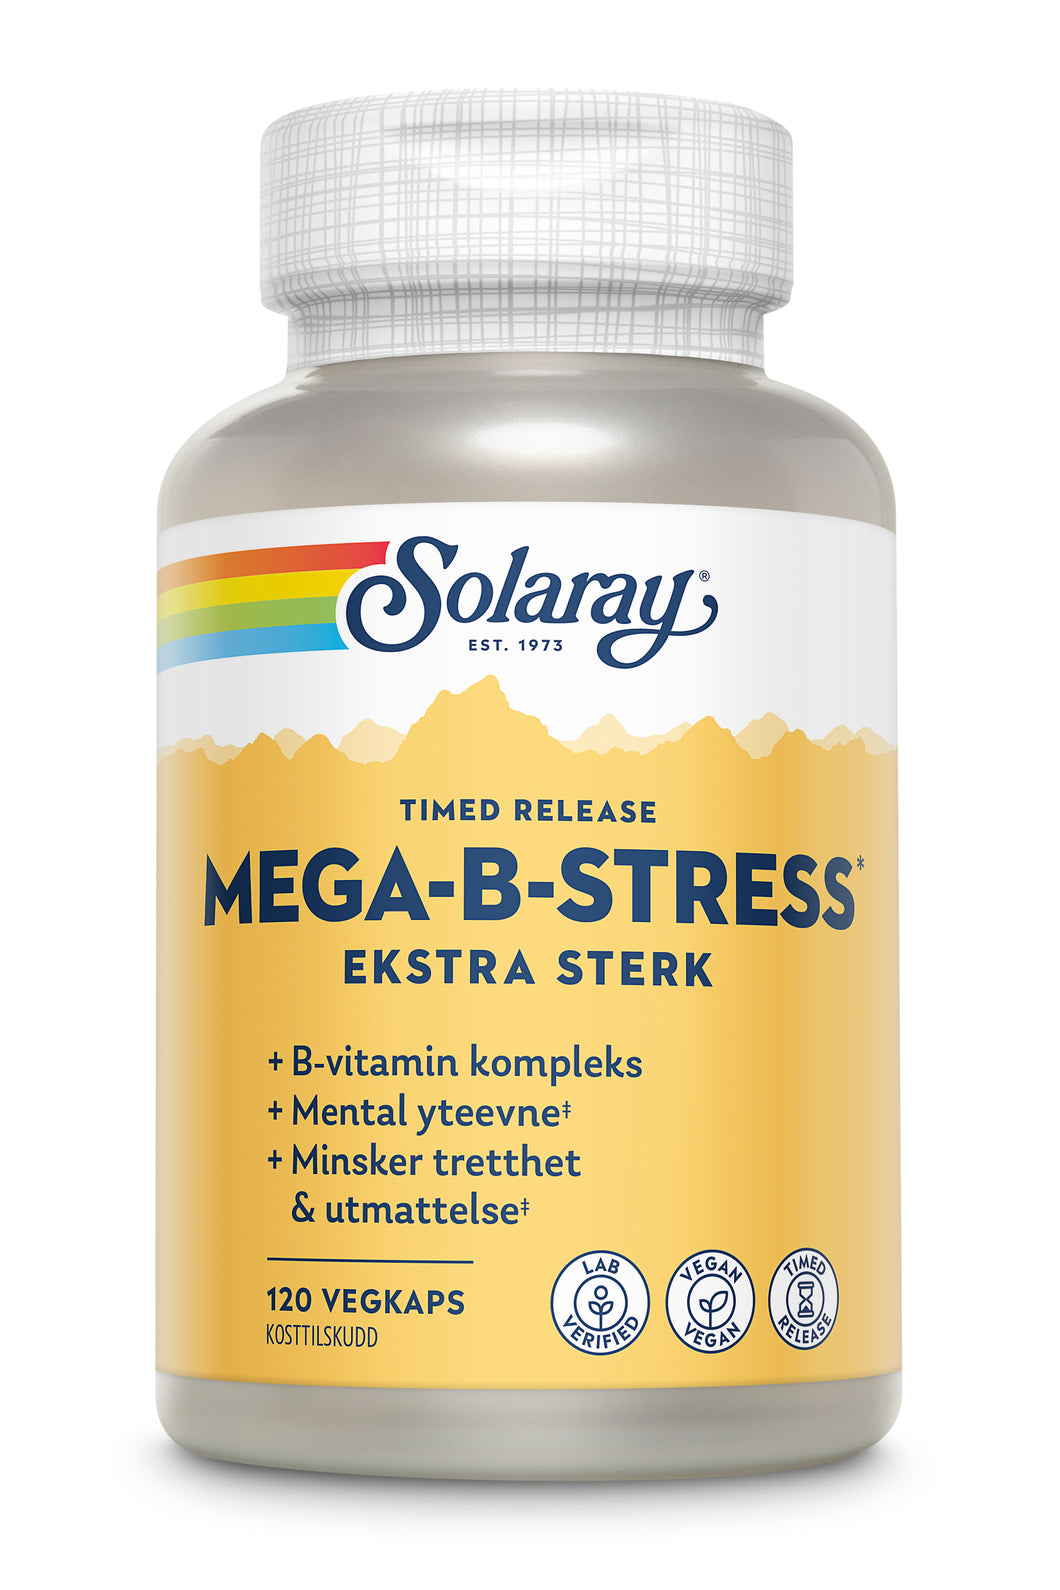 MEGA-B-STRESS EKSTRA STERK